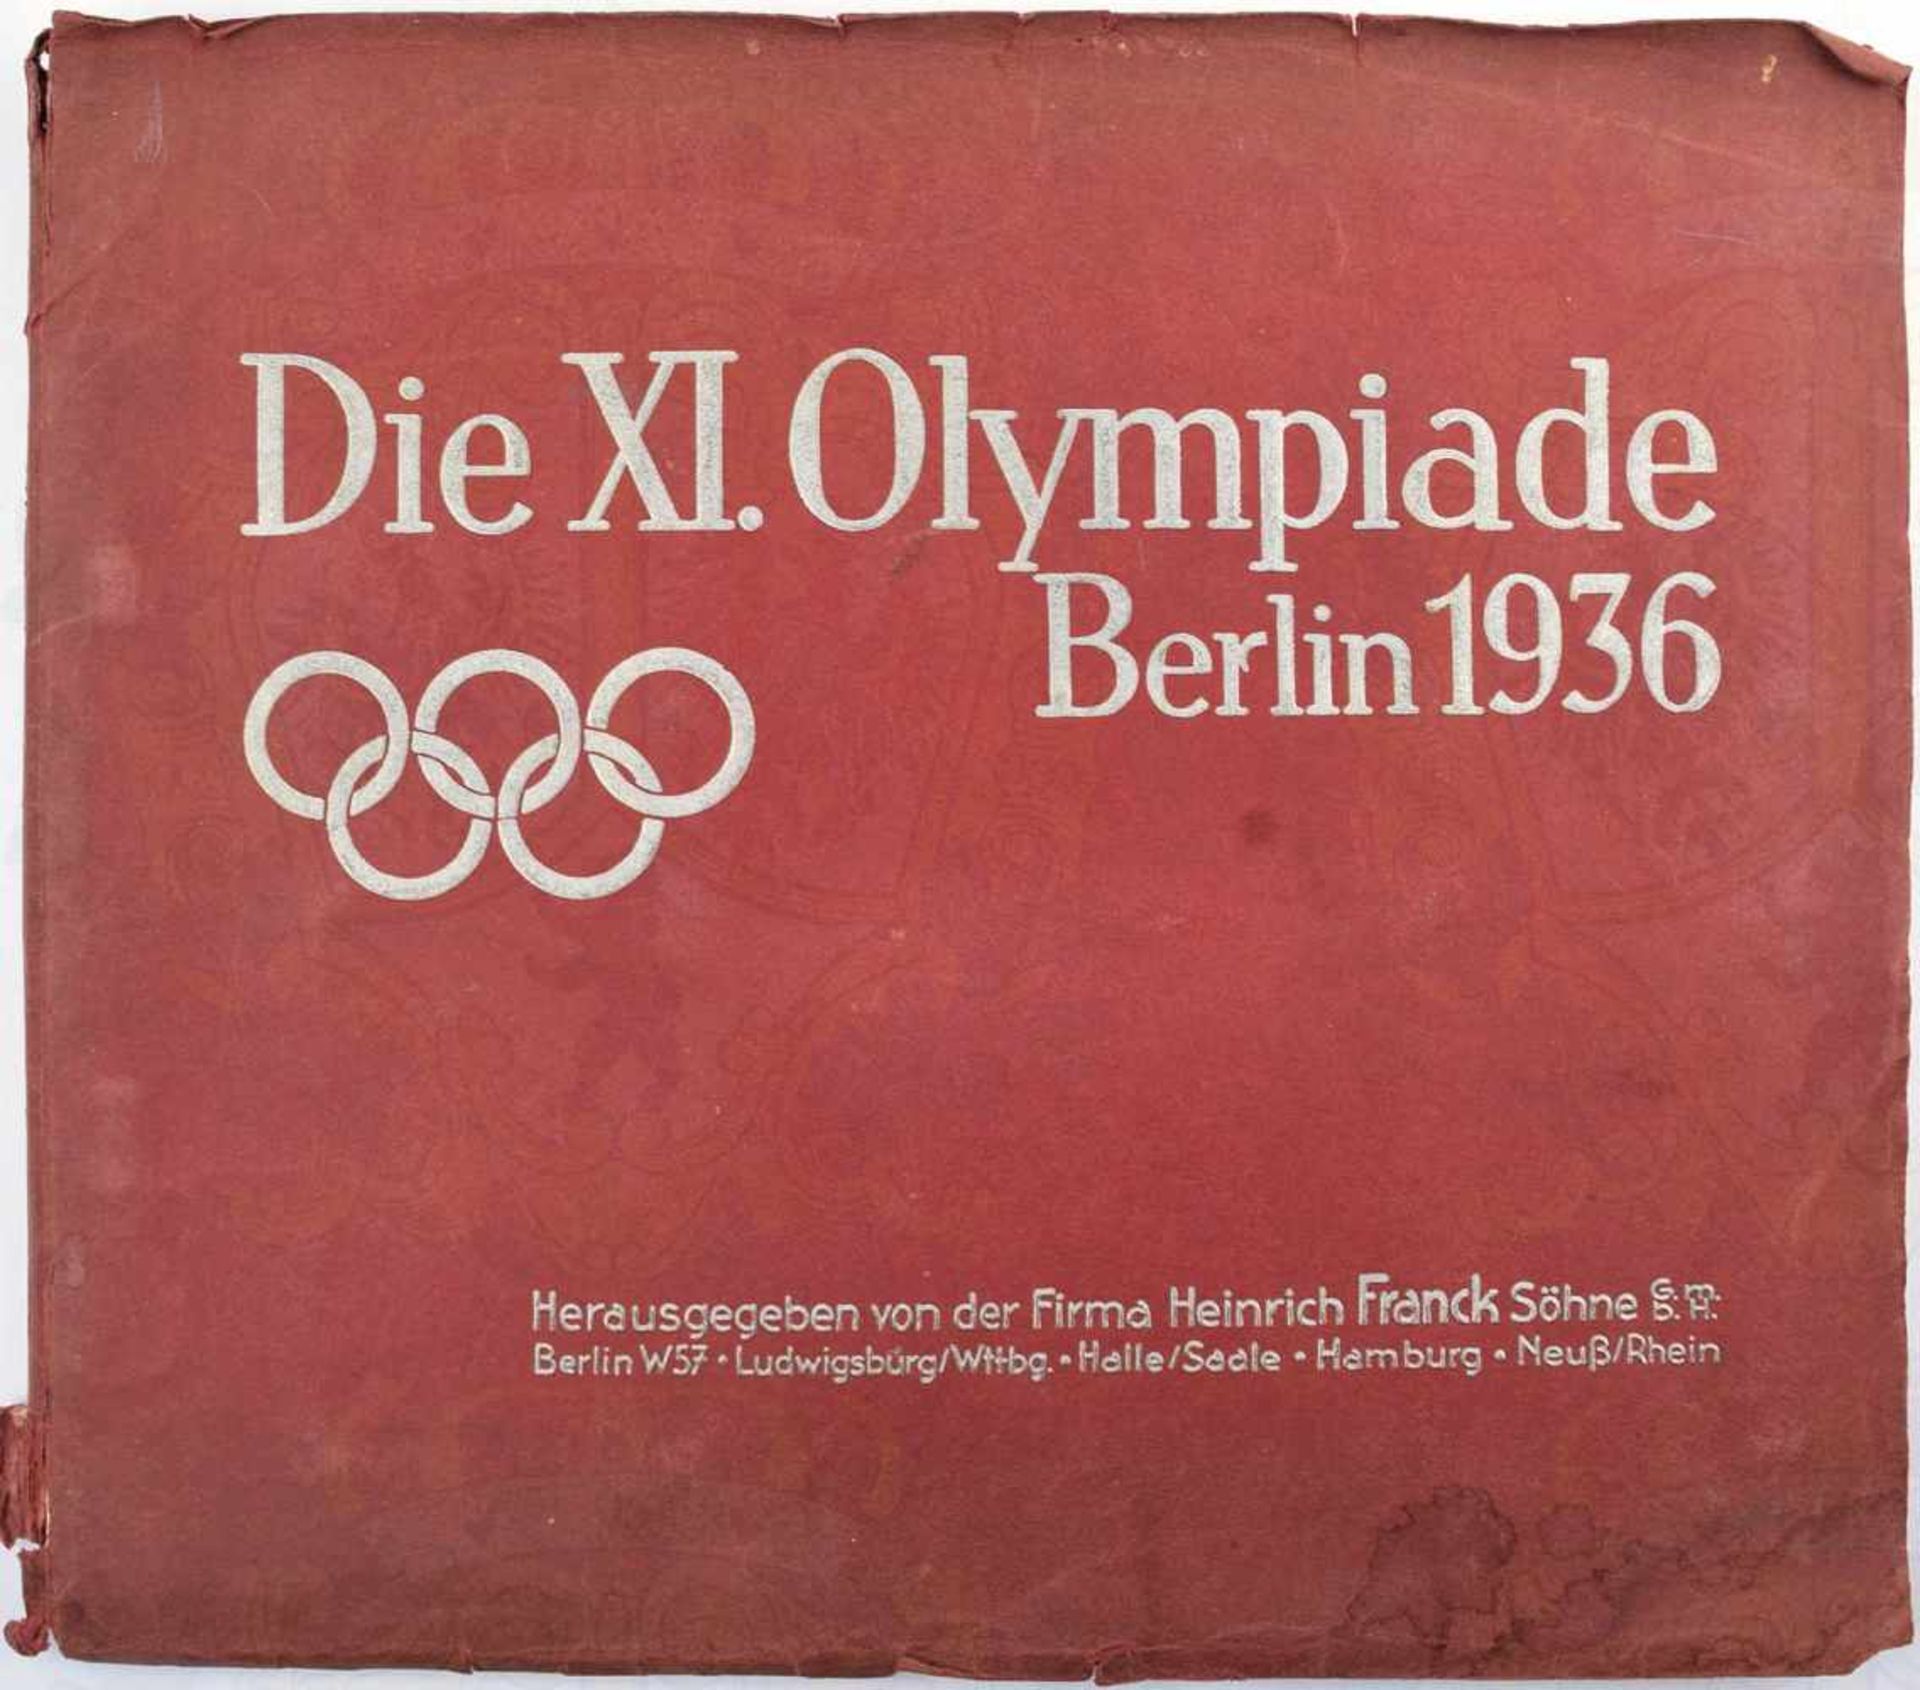 DIE XI. OLYMPIADE BERLIN 1936, Hrsg. Heinrich Frank GmbH, Ludwigsburg 1936, 192 farb. Bilder nach